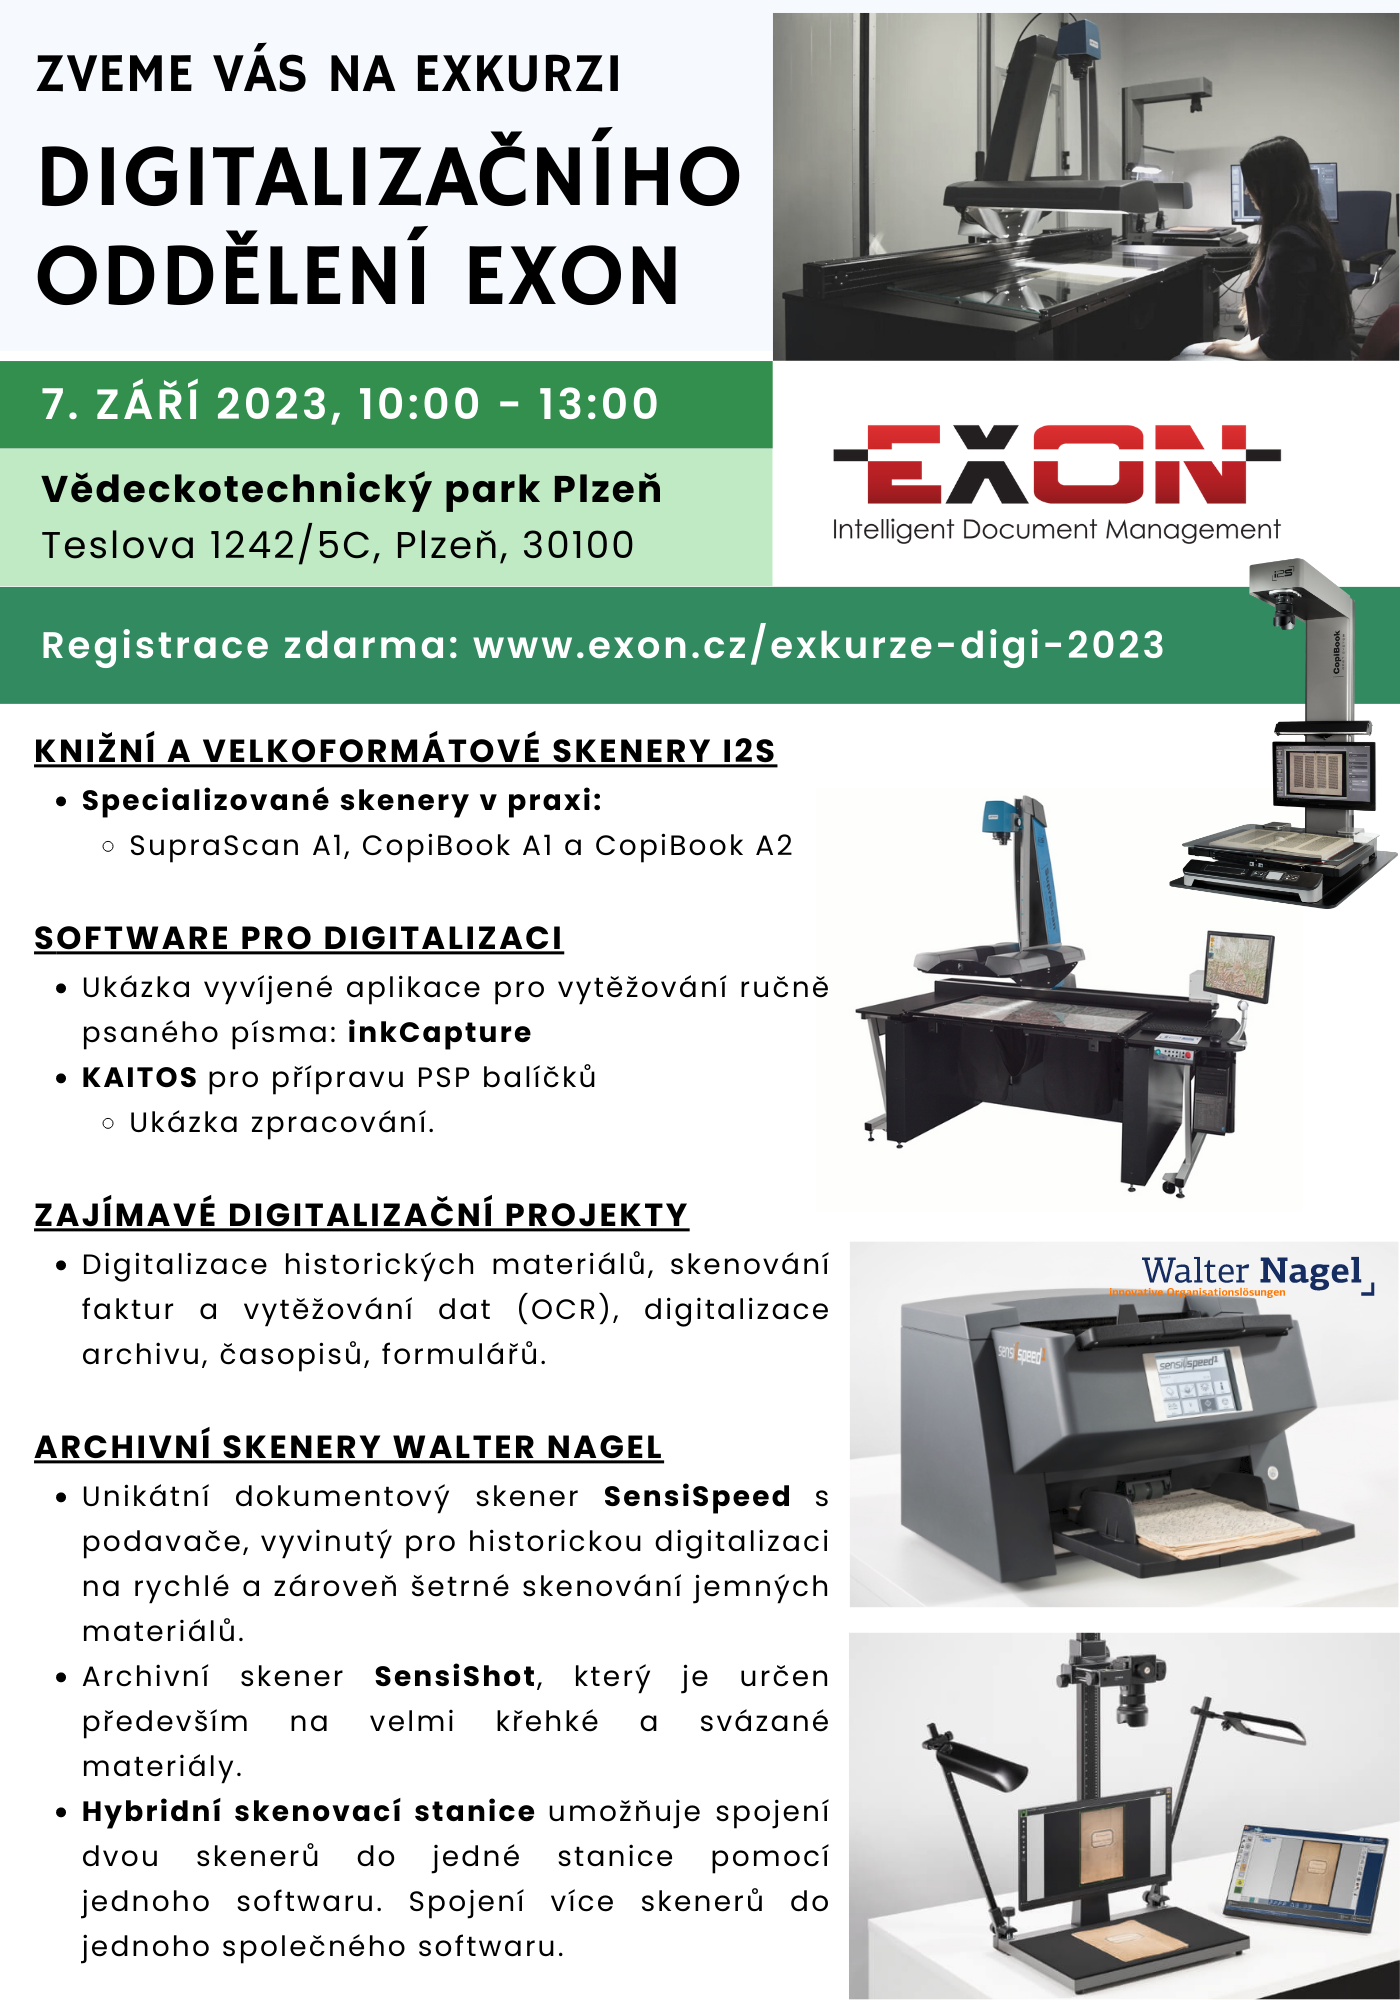 Pozvánka na exkurzi na digitalzační centru EXON v Plzni